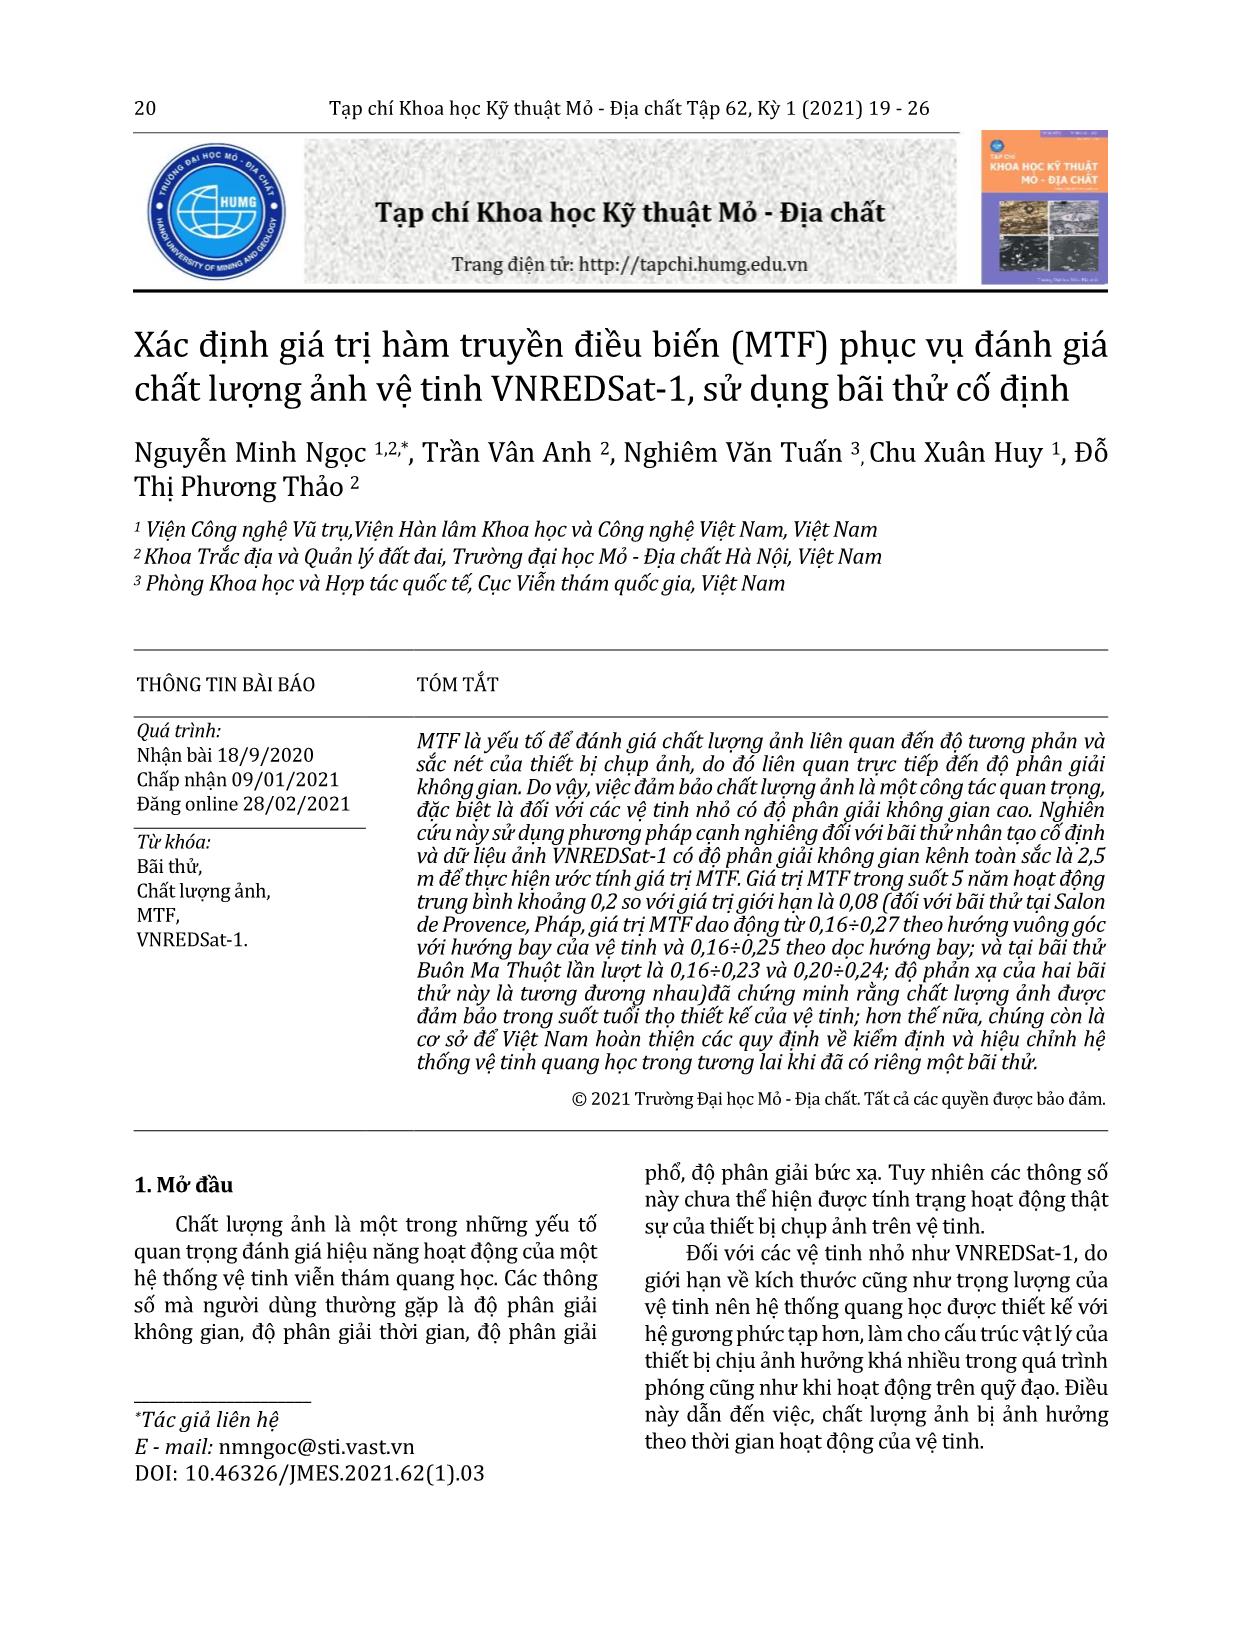 Xác định giá trị hàm truyền điều biến (MTF) phục vụ đánh giá chất lượng ảnh vệ tinh VNREDSat-1, sử dụng bãi thử cố định trang 2